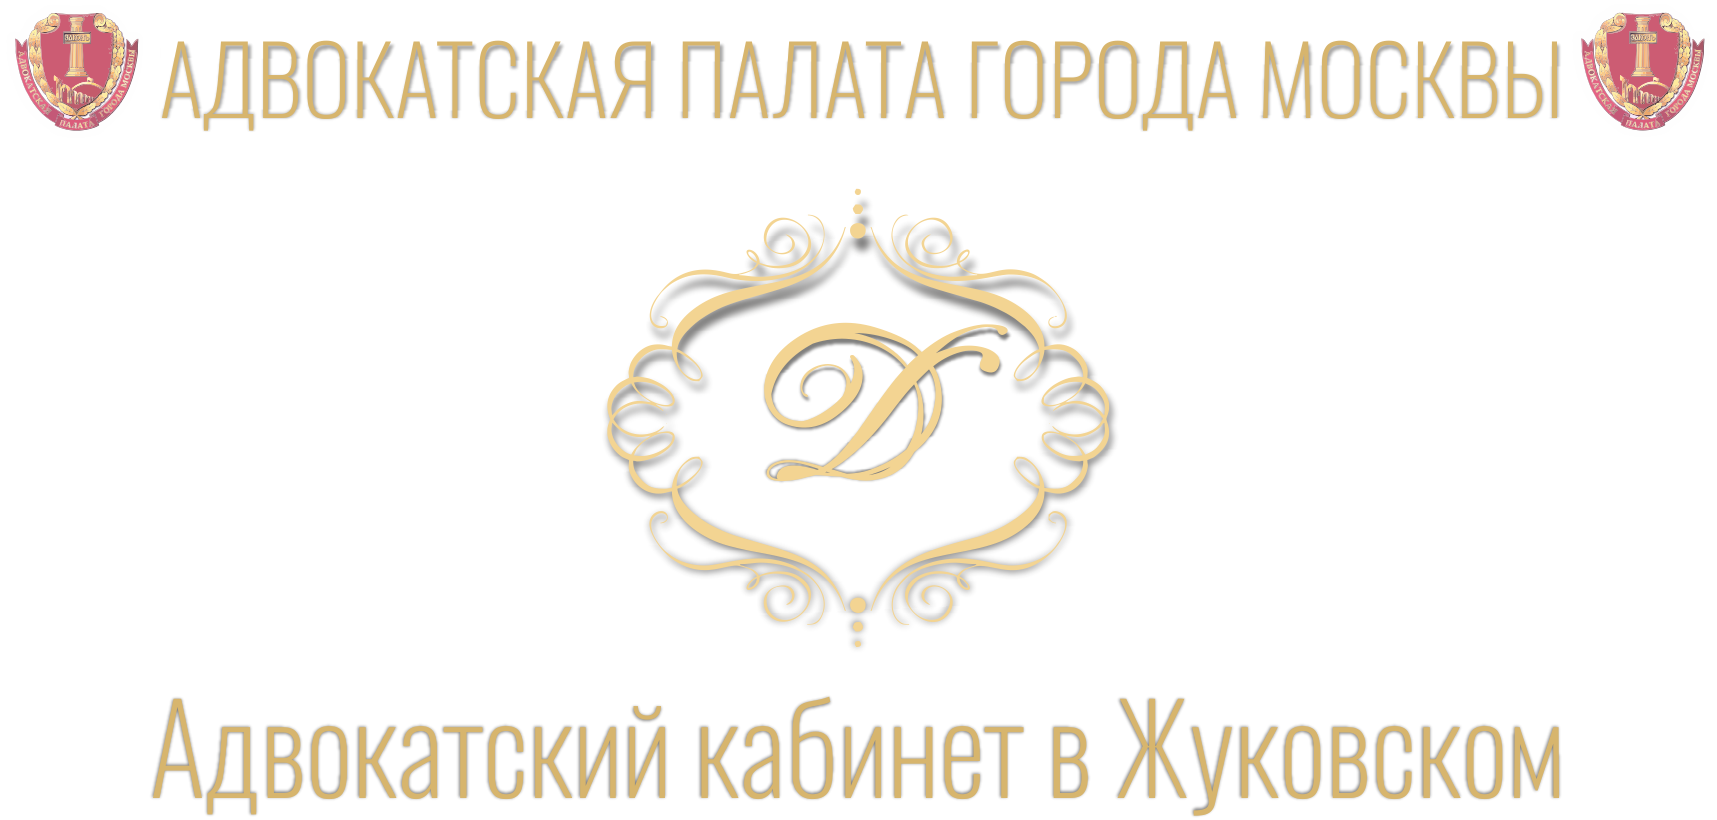 Адвокатский кабинет эмблема. Адвокатская палата Московской области логотип вектор. Адвокатская палата адвокатский кабинет